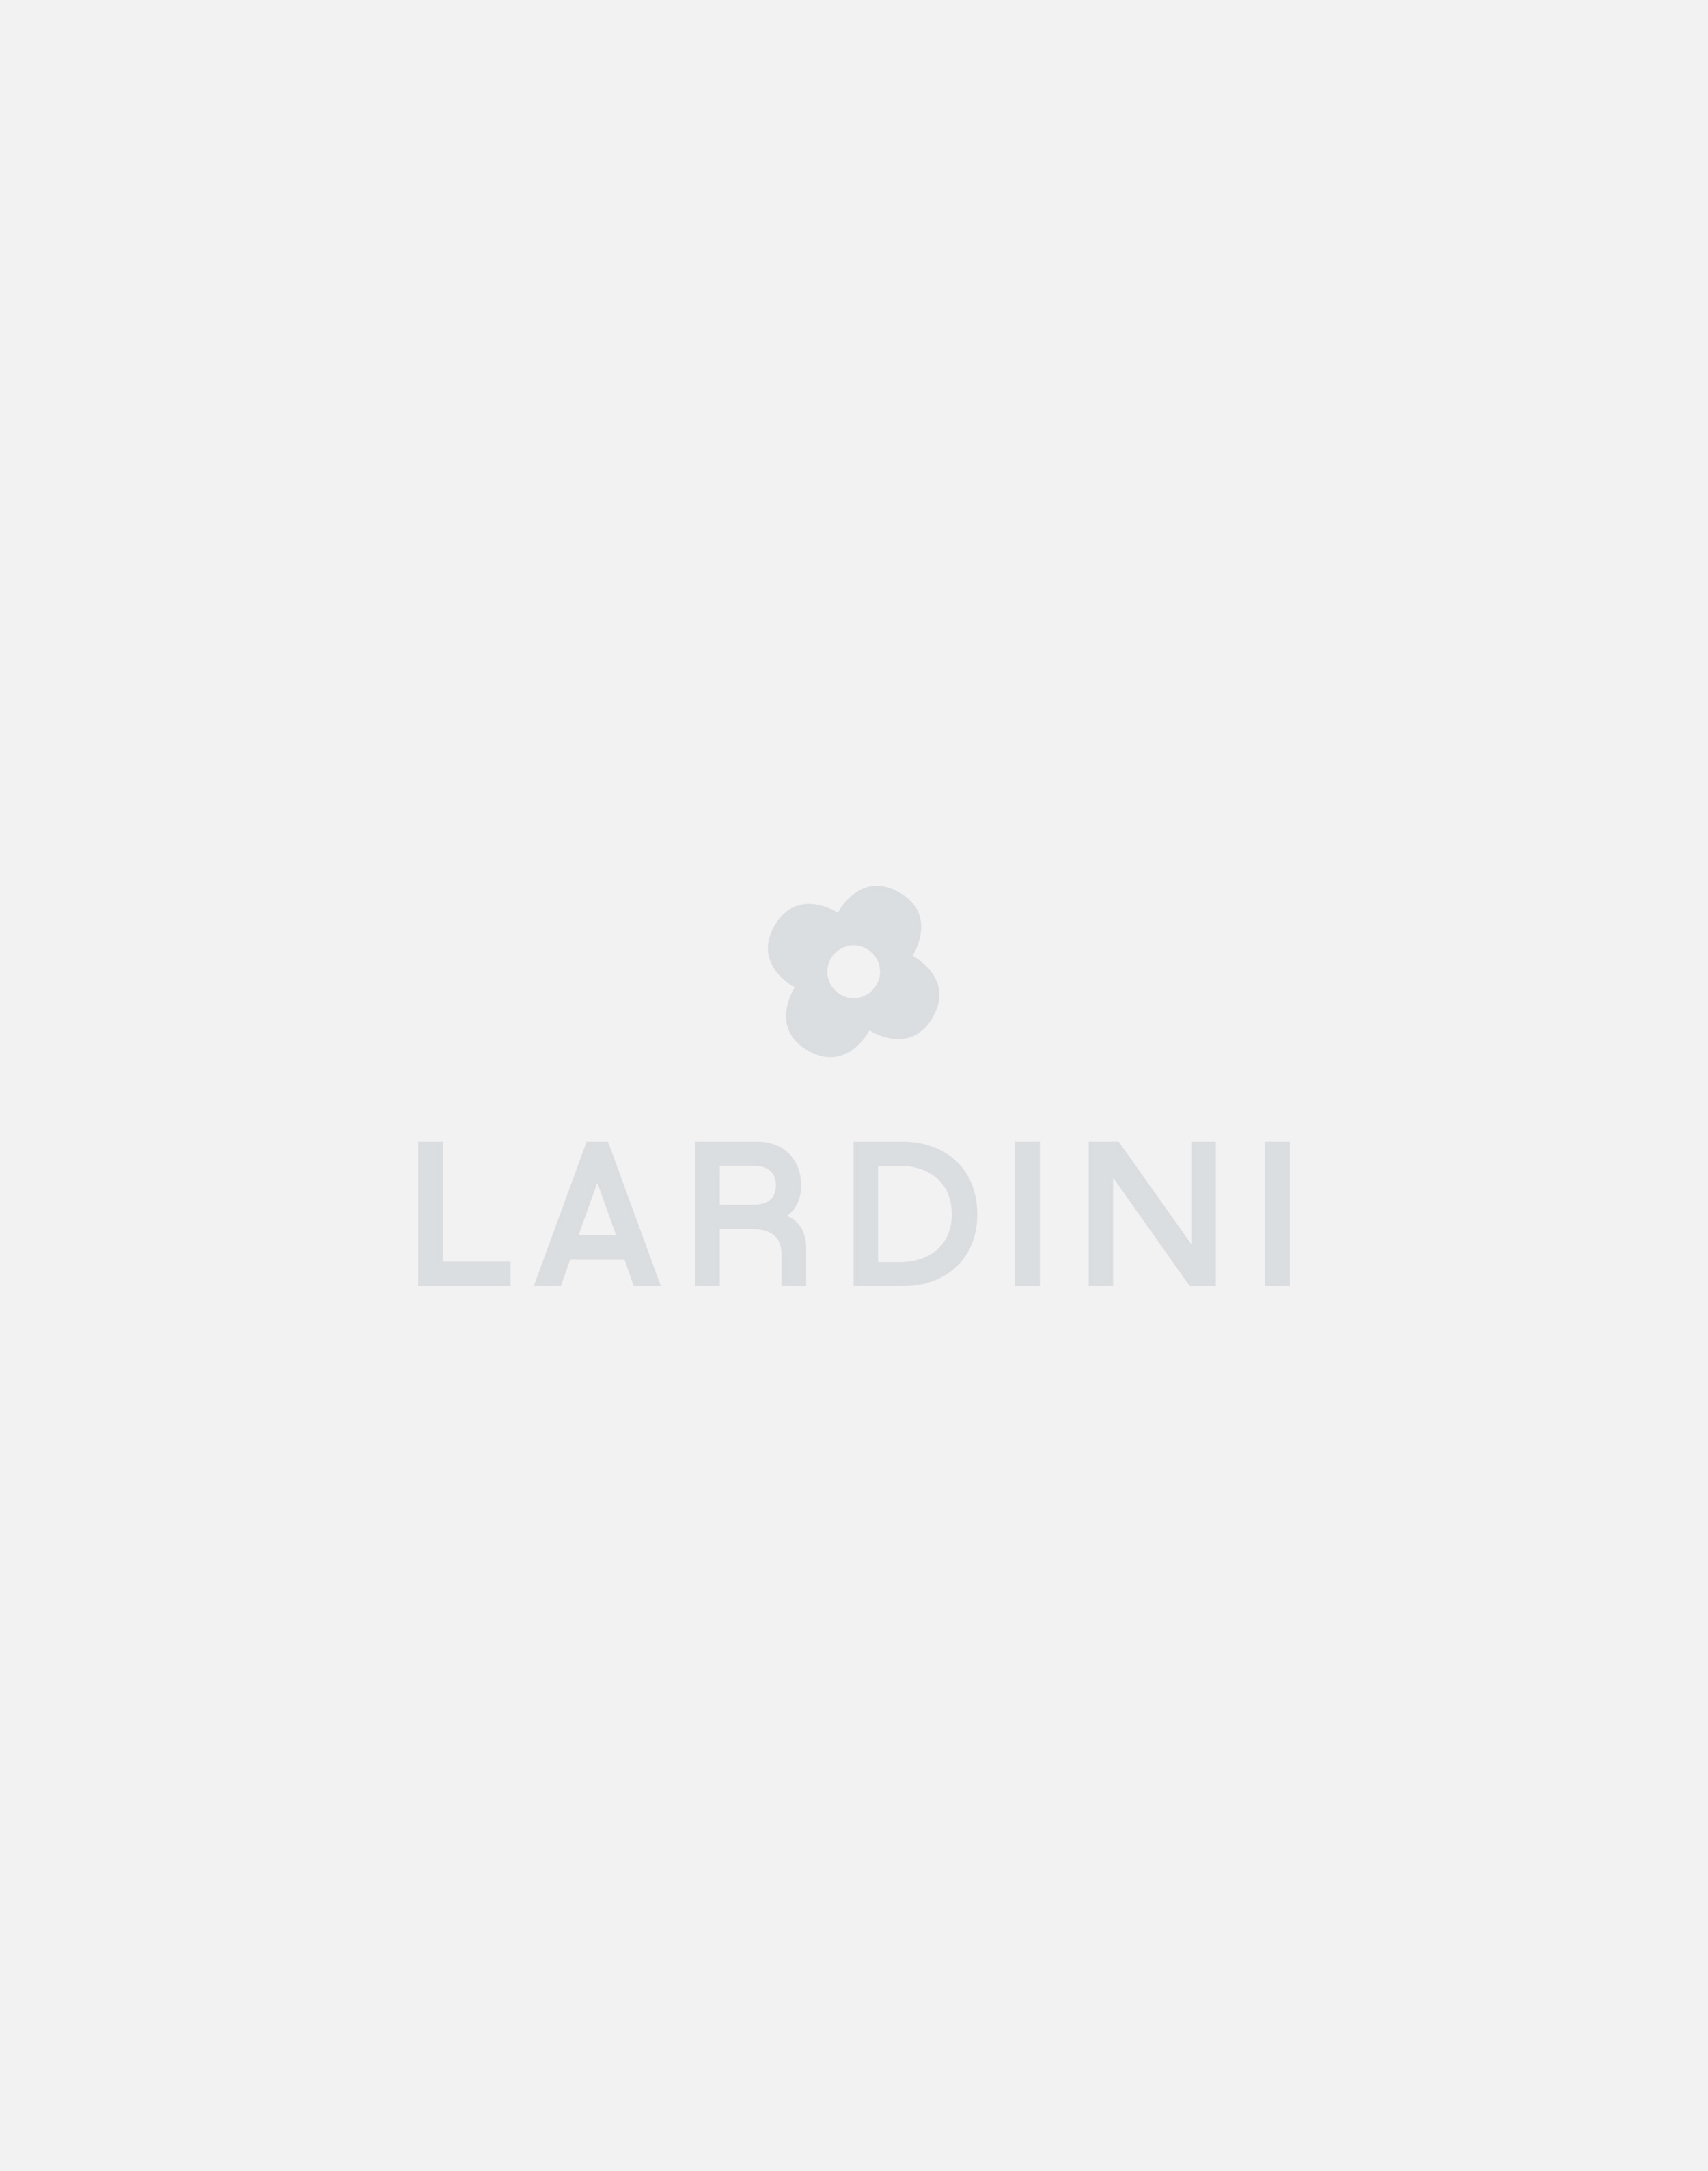 White cotton and linen cardigan - Luigi Lardini capsule 3